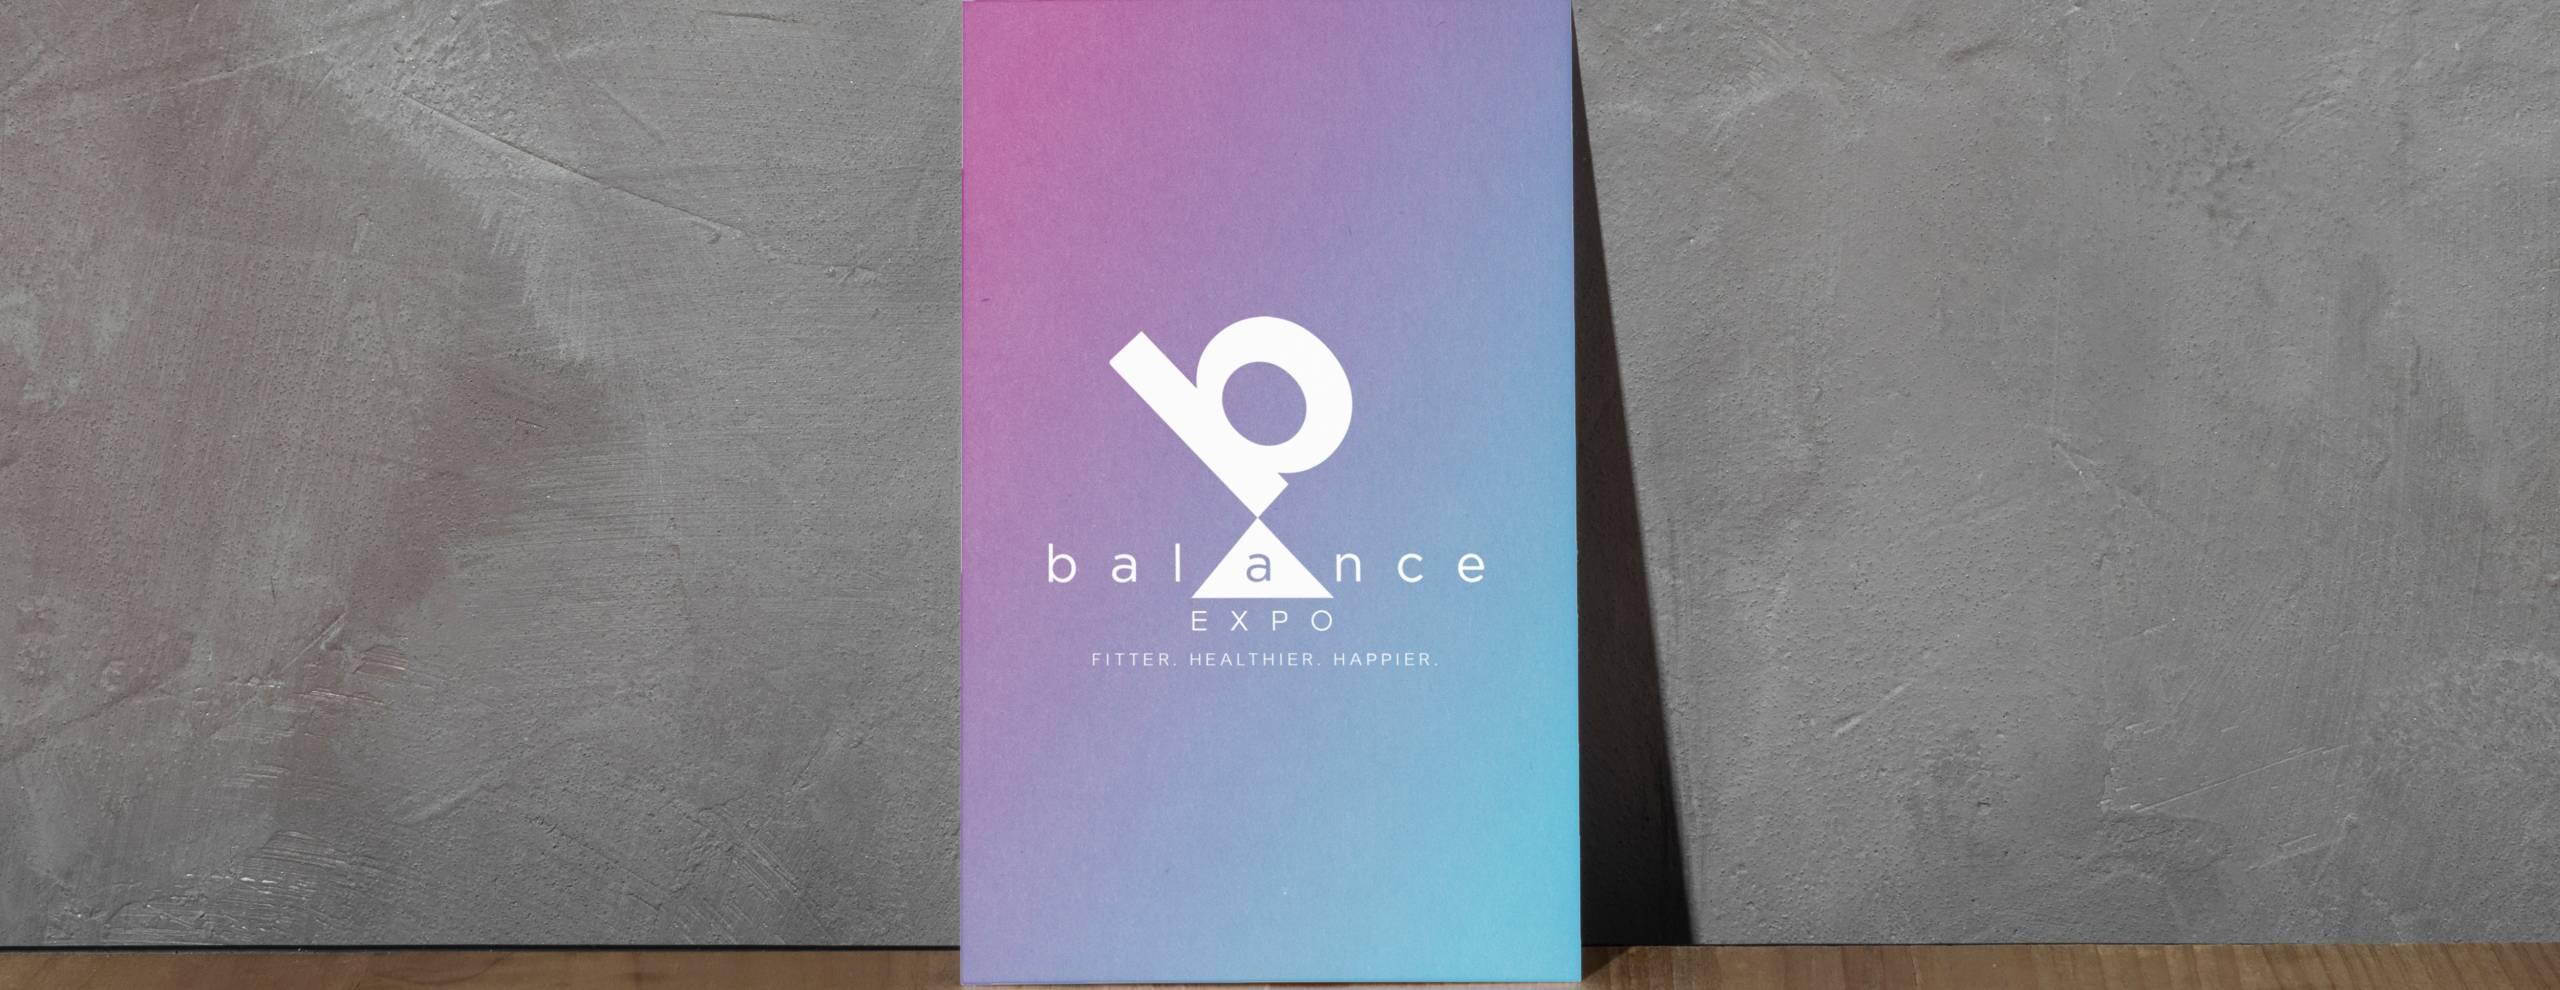 balance-5-scaled-1